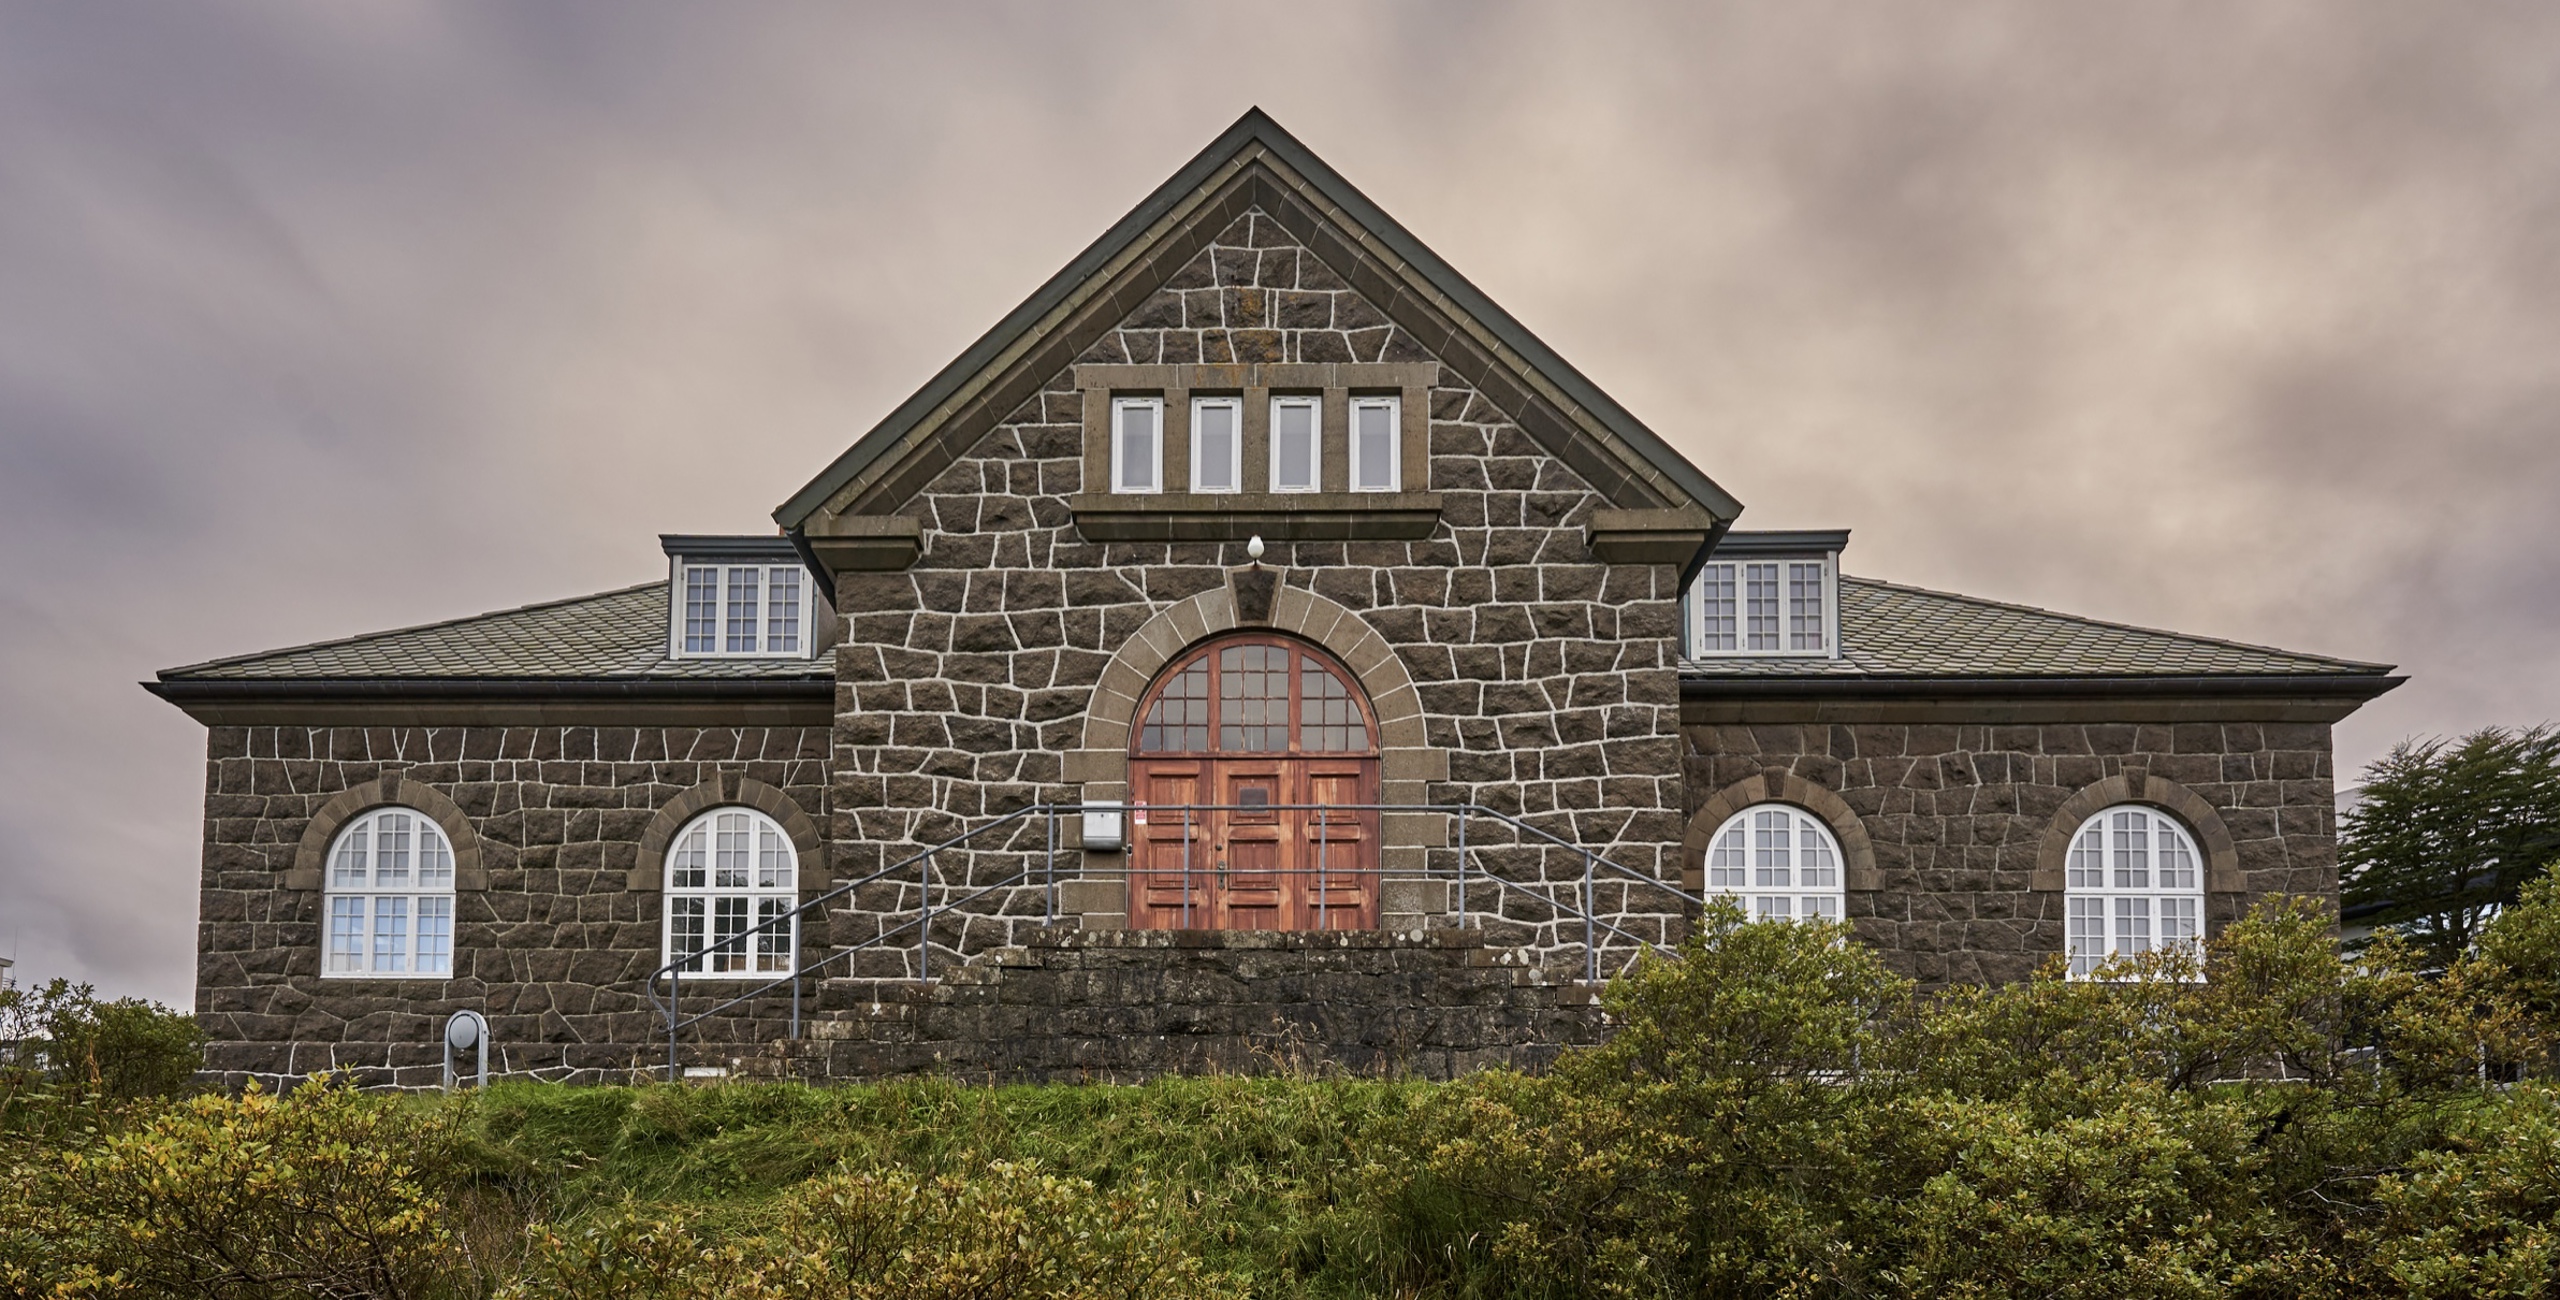 University of the Faroe Islands